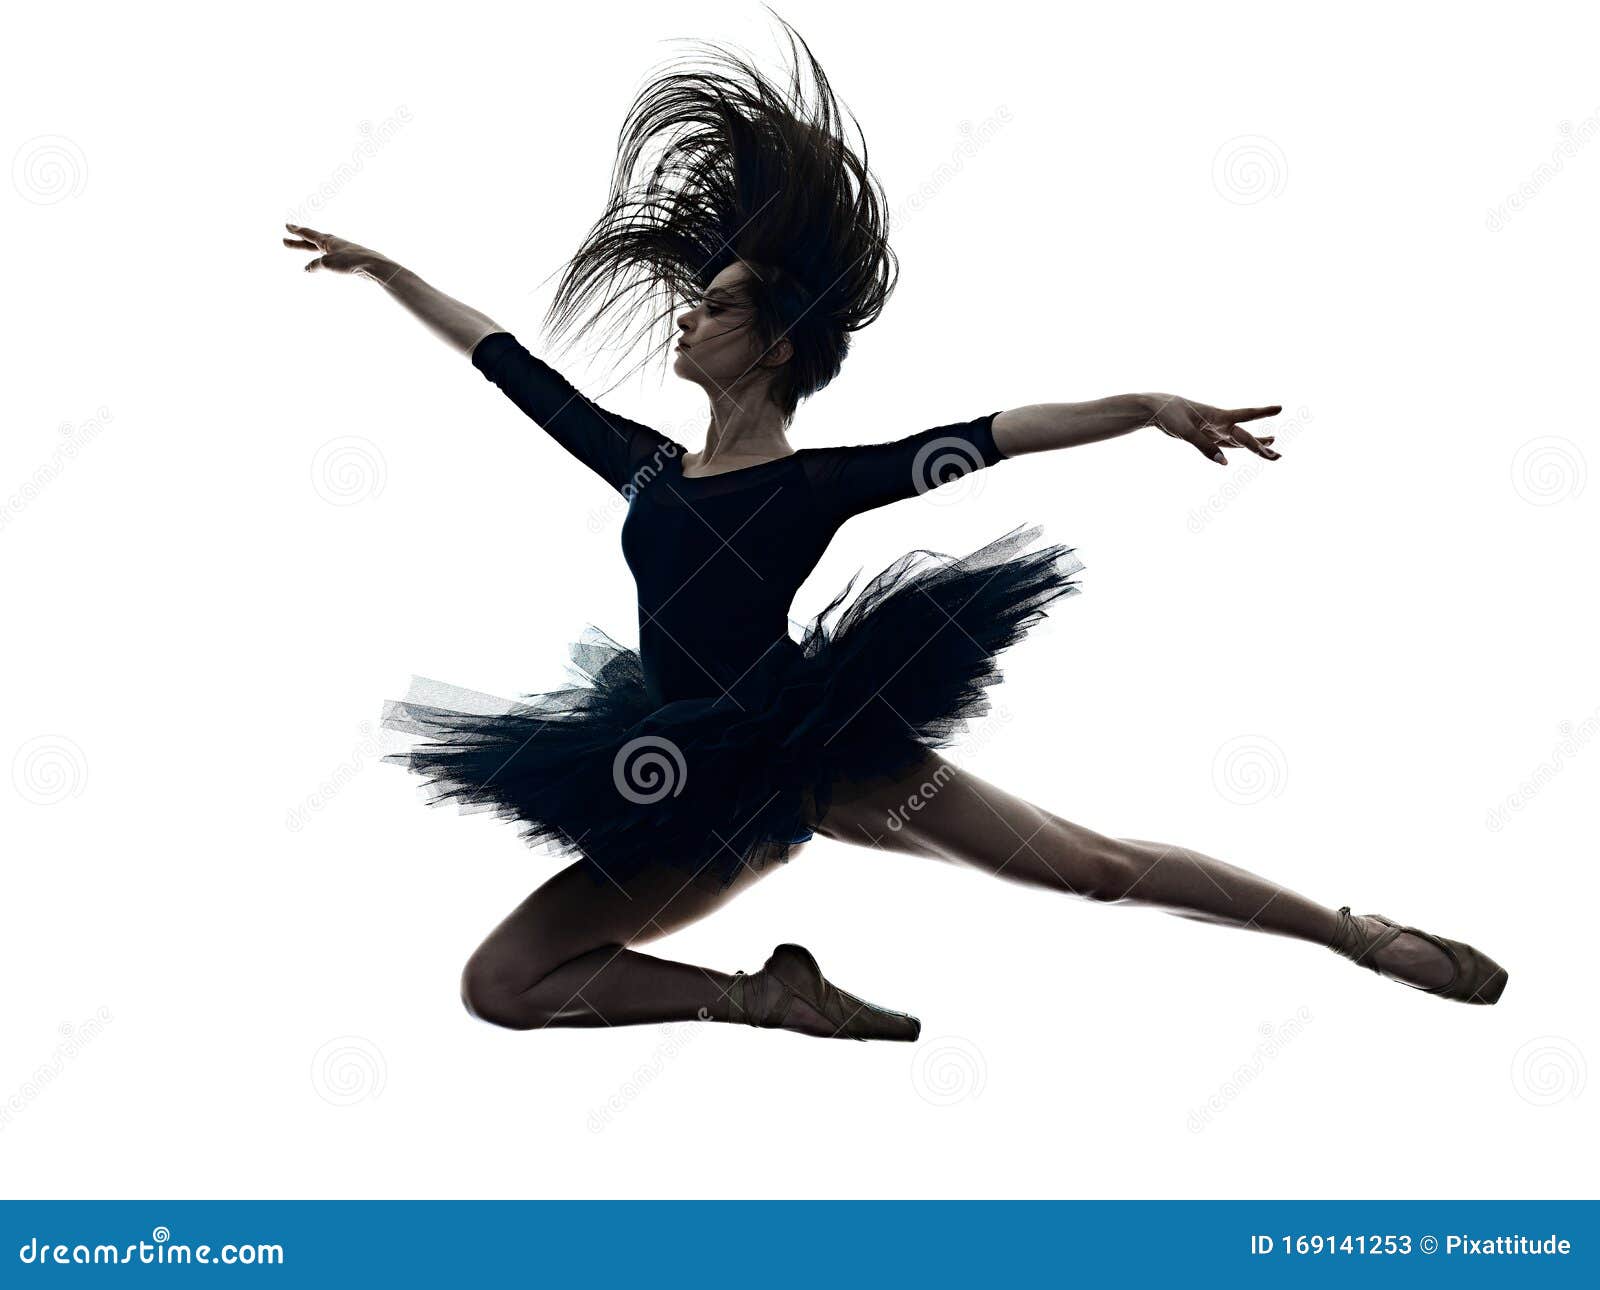 Belle Femme Danseuse De Ballet Dans Un Tutu Blanc Pratiquant Des Pas De Danse  Classique En Studio Avant La Représentation